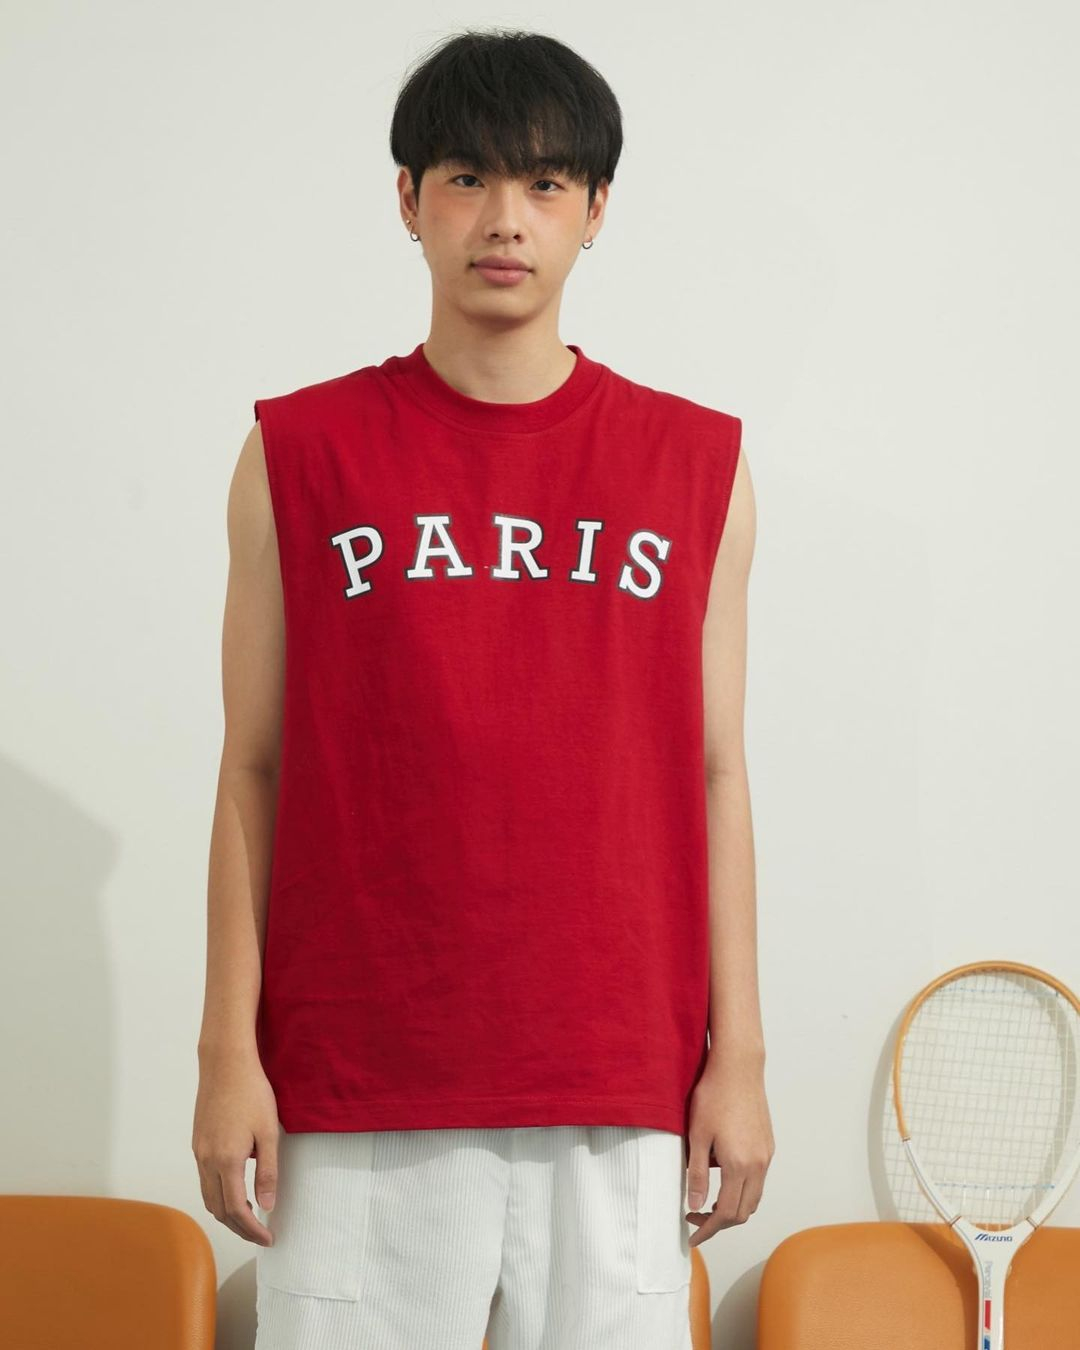 "Paris" Bobby Sleeveless Shirt (Red)